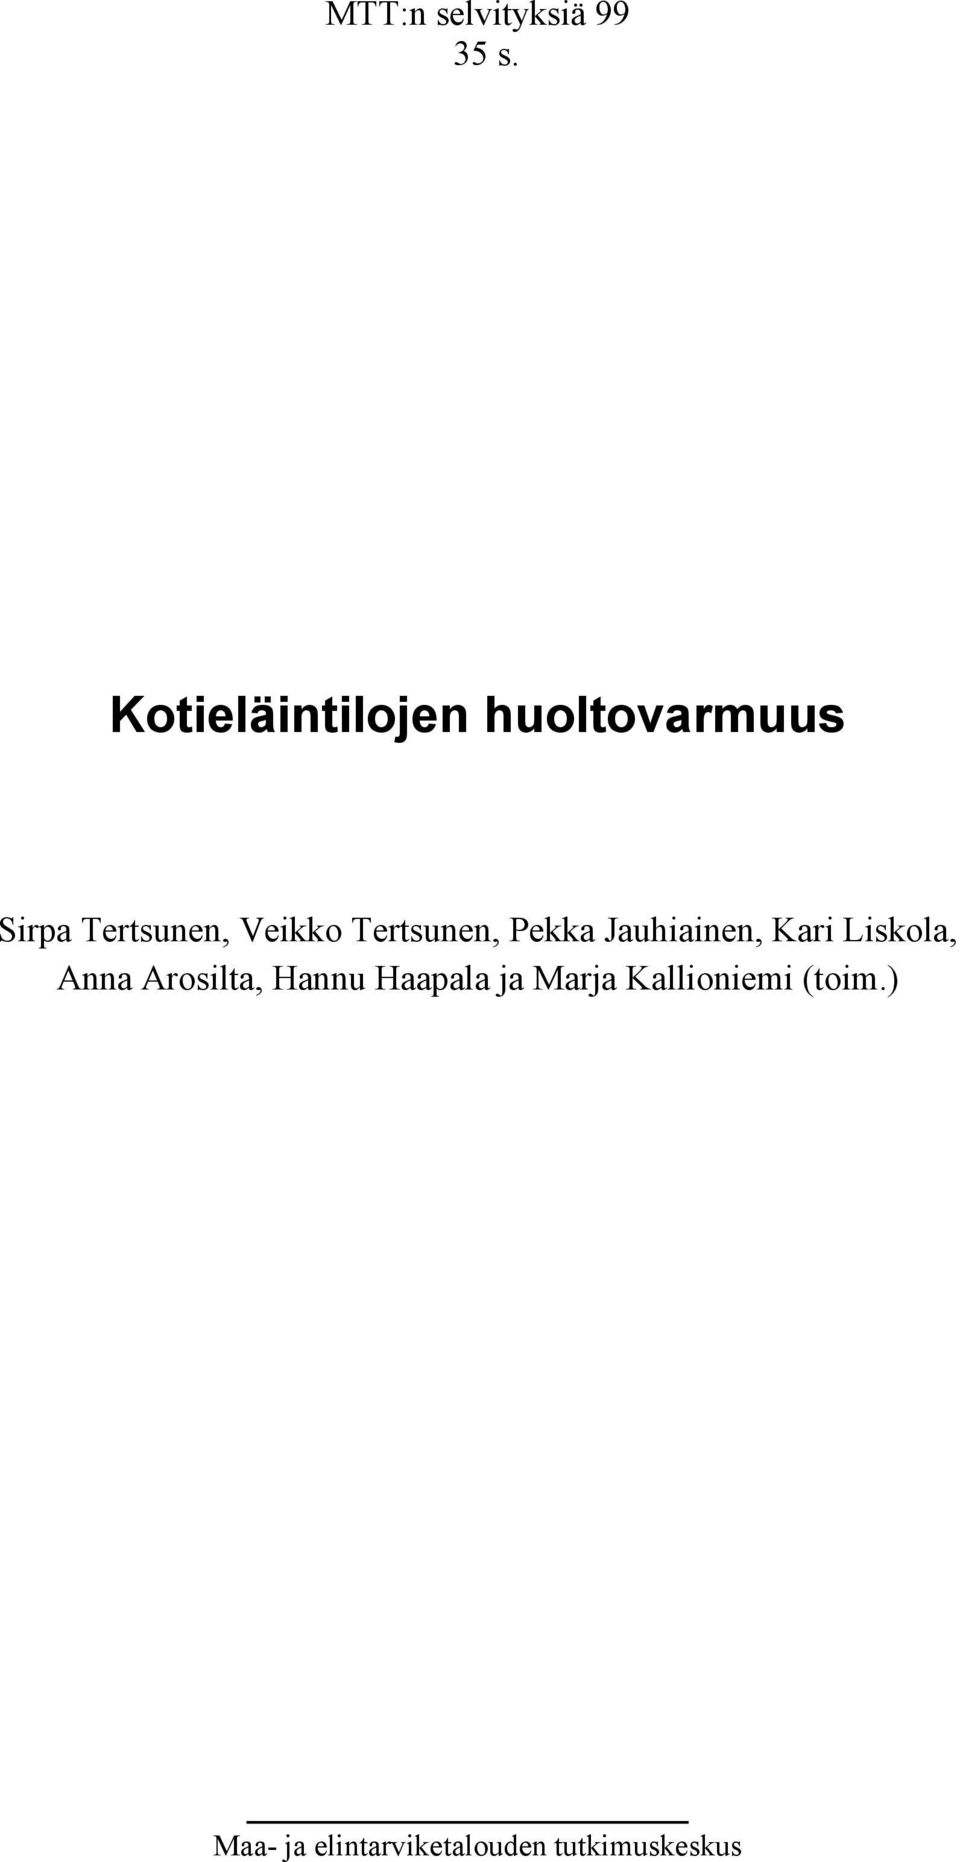 Tertsunen, Pekka Jauhiainen, Kari Liskola, Anna